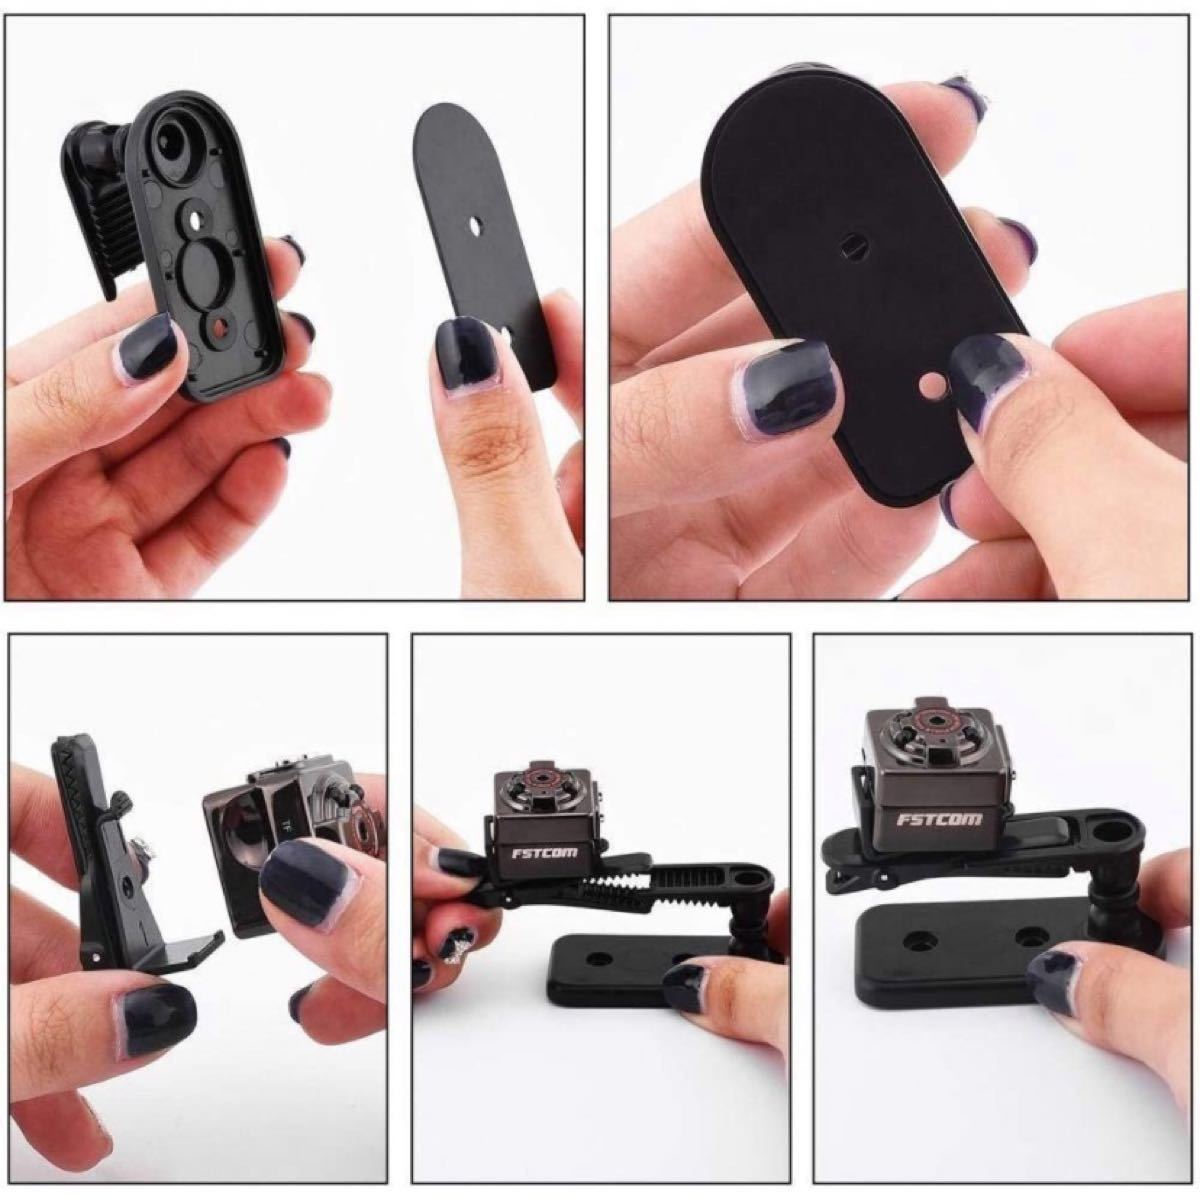 【新品】SQ8カメラ Matchdor 防犯カメラ 赤外線 動体検知 暗視機能